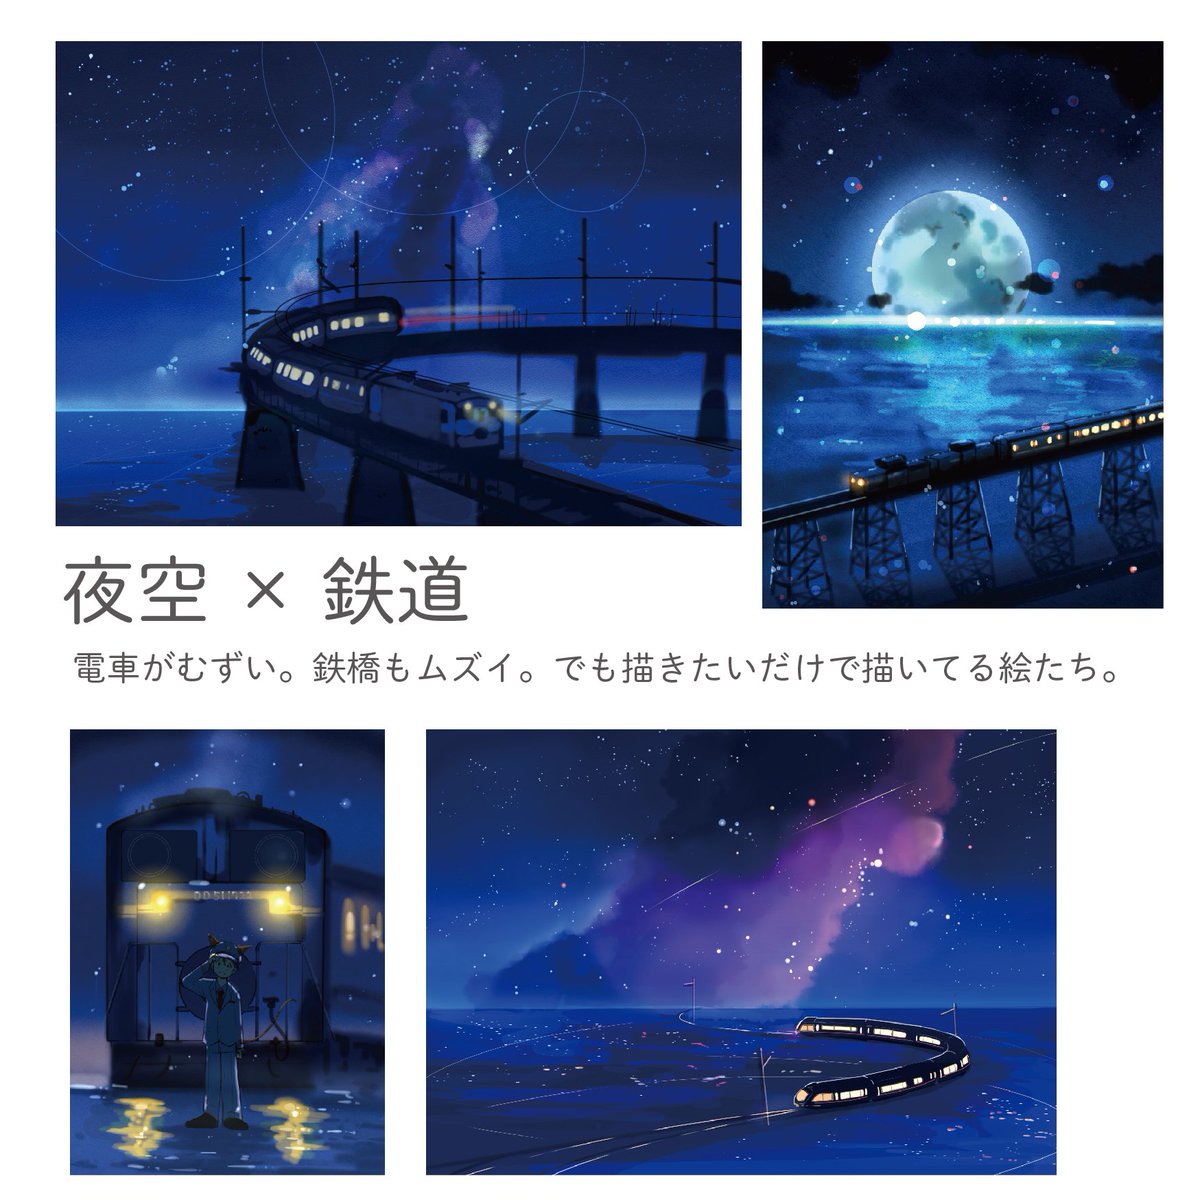 桜田千尋 10月1日レシピ本発売 夕日に引き続き自分の夜空のイラストを種類わけしてみました 夜空は 夜空 みたいな感じで一緒に何を描くかが楽しいところかなと思ってます